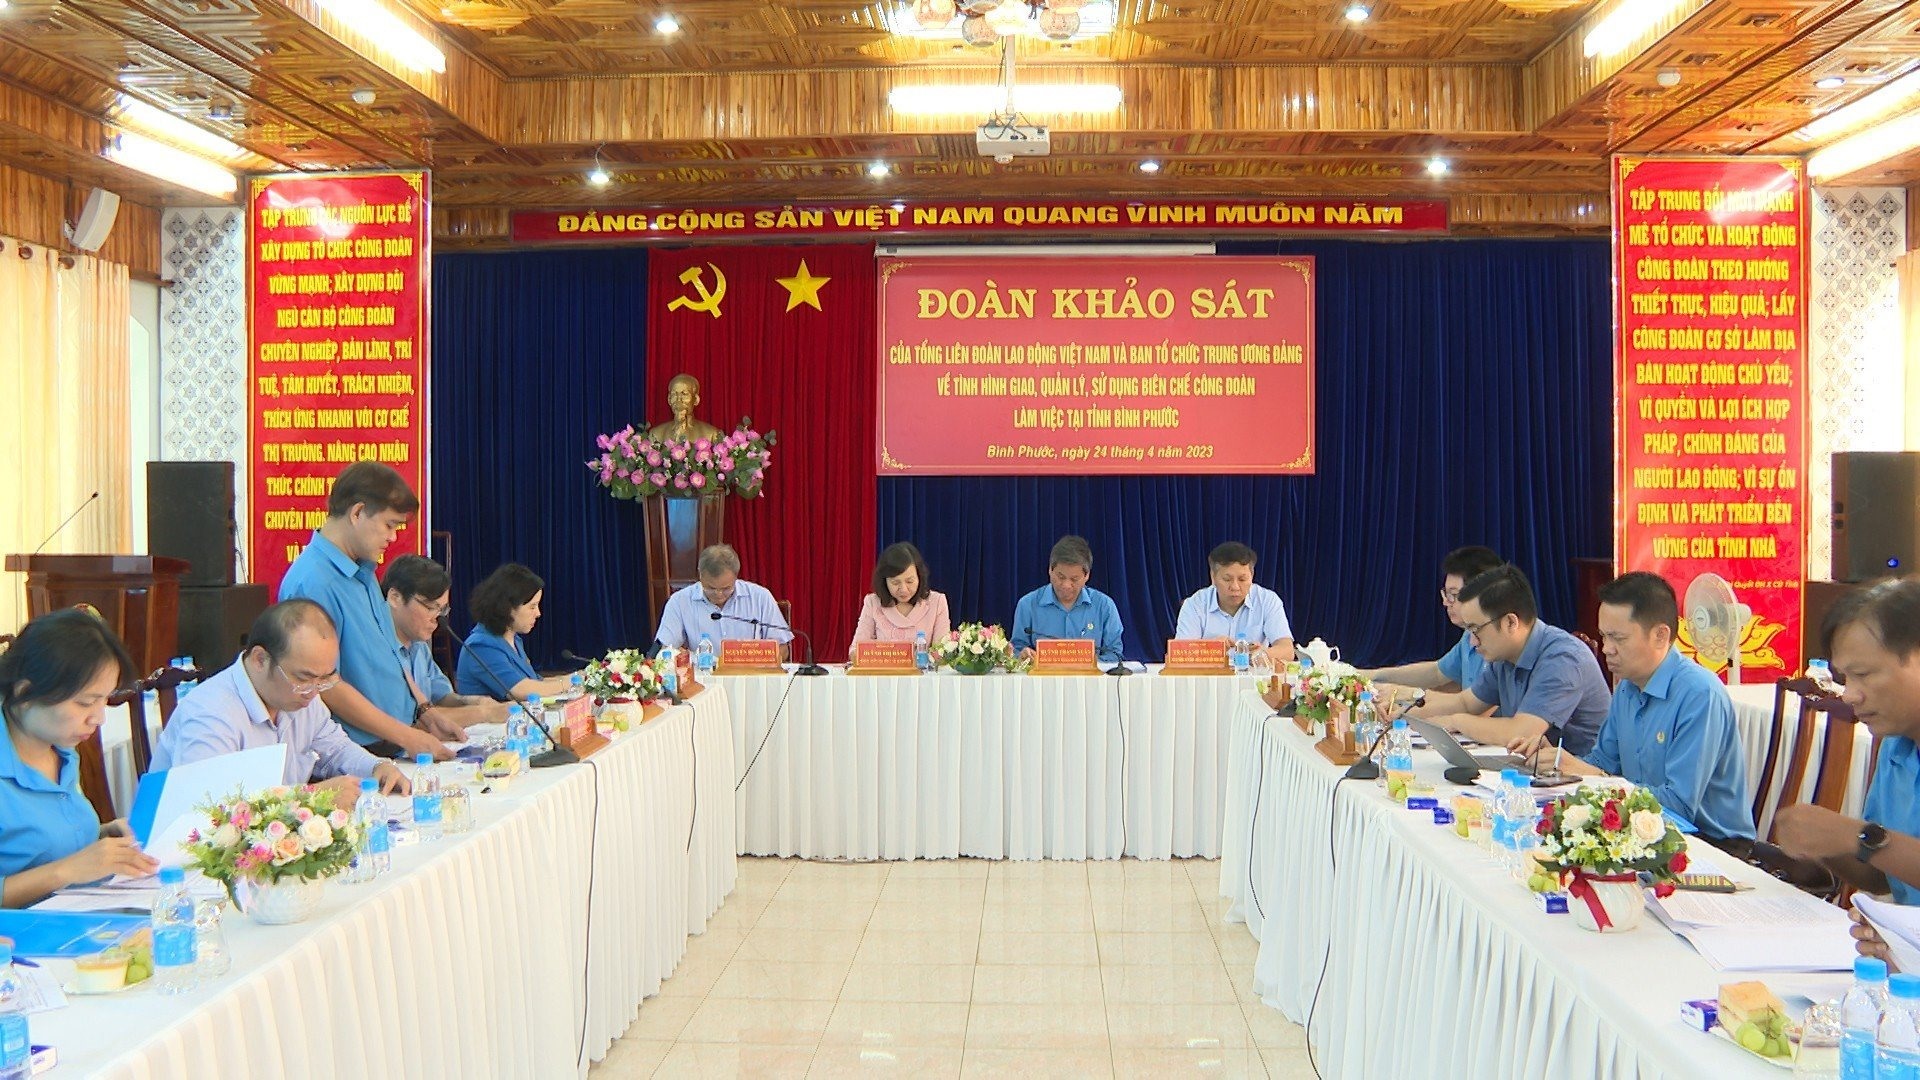 Đoàn khảo sát của Tổng LĐLĐ Việt Nam và Ban Tổ chức Trung ương Đảng đã có buổi làm việc tại tỉnh Bình Phước. Ảnh: Thu Hiền